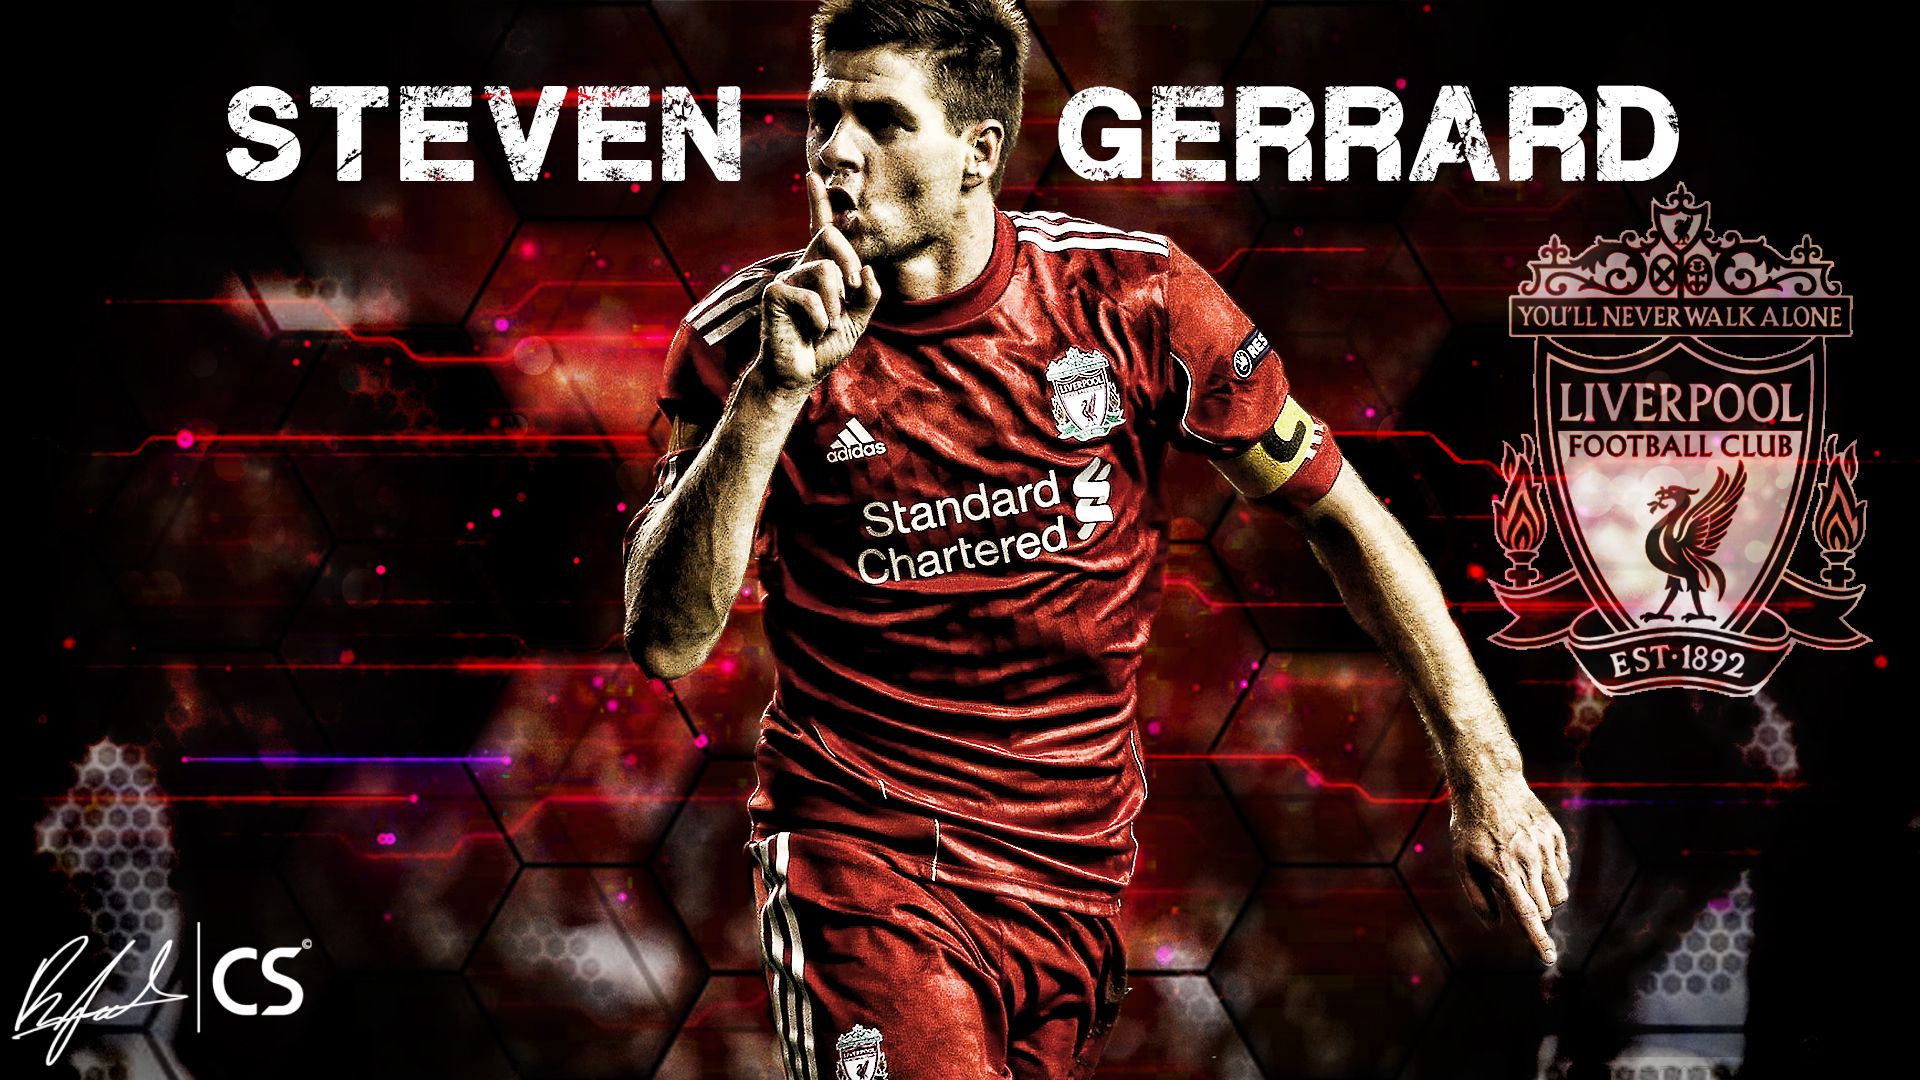 Steven Gerrard Liverpool Fc Wallpaper At Wallpaperbro